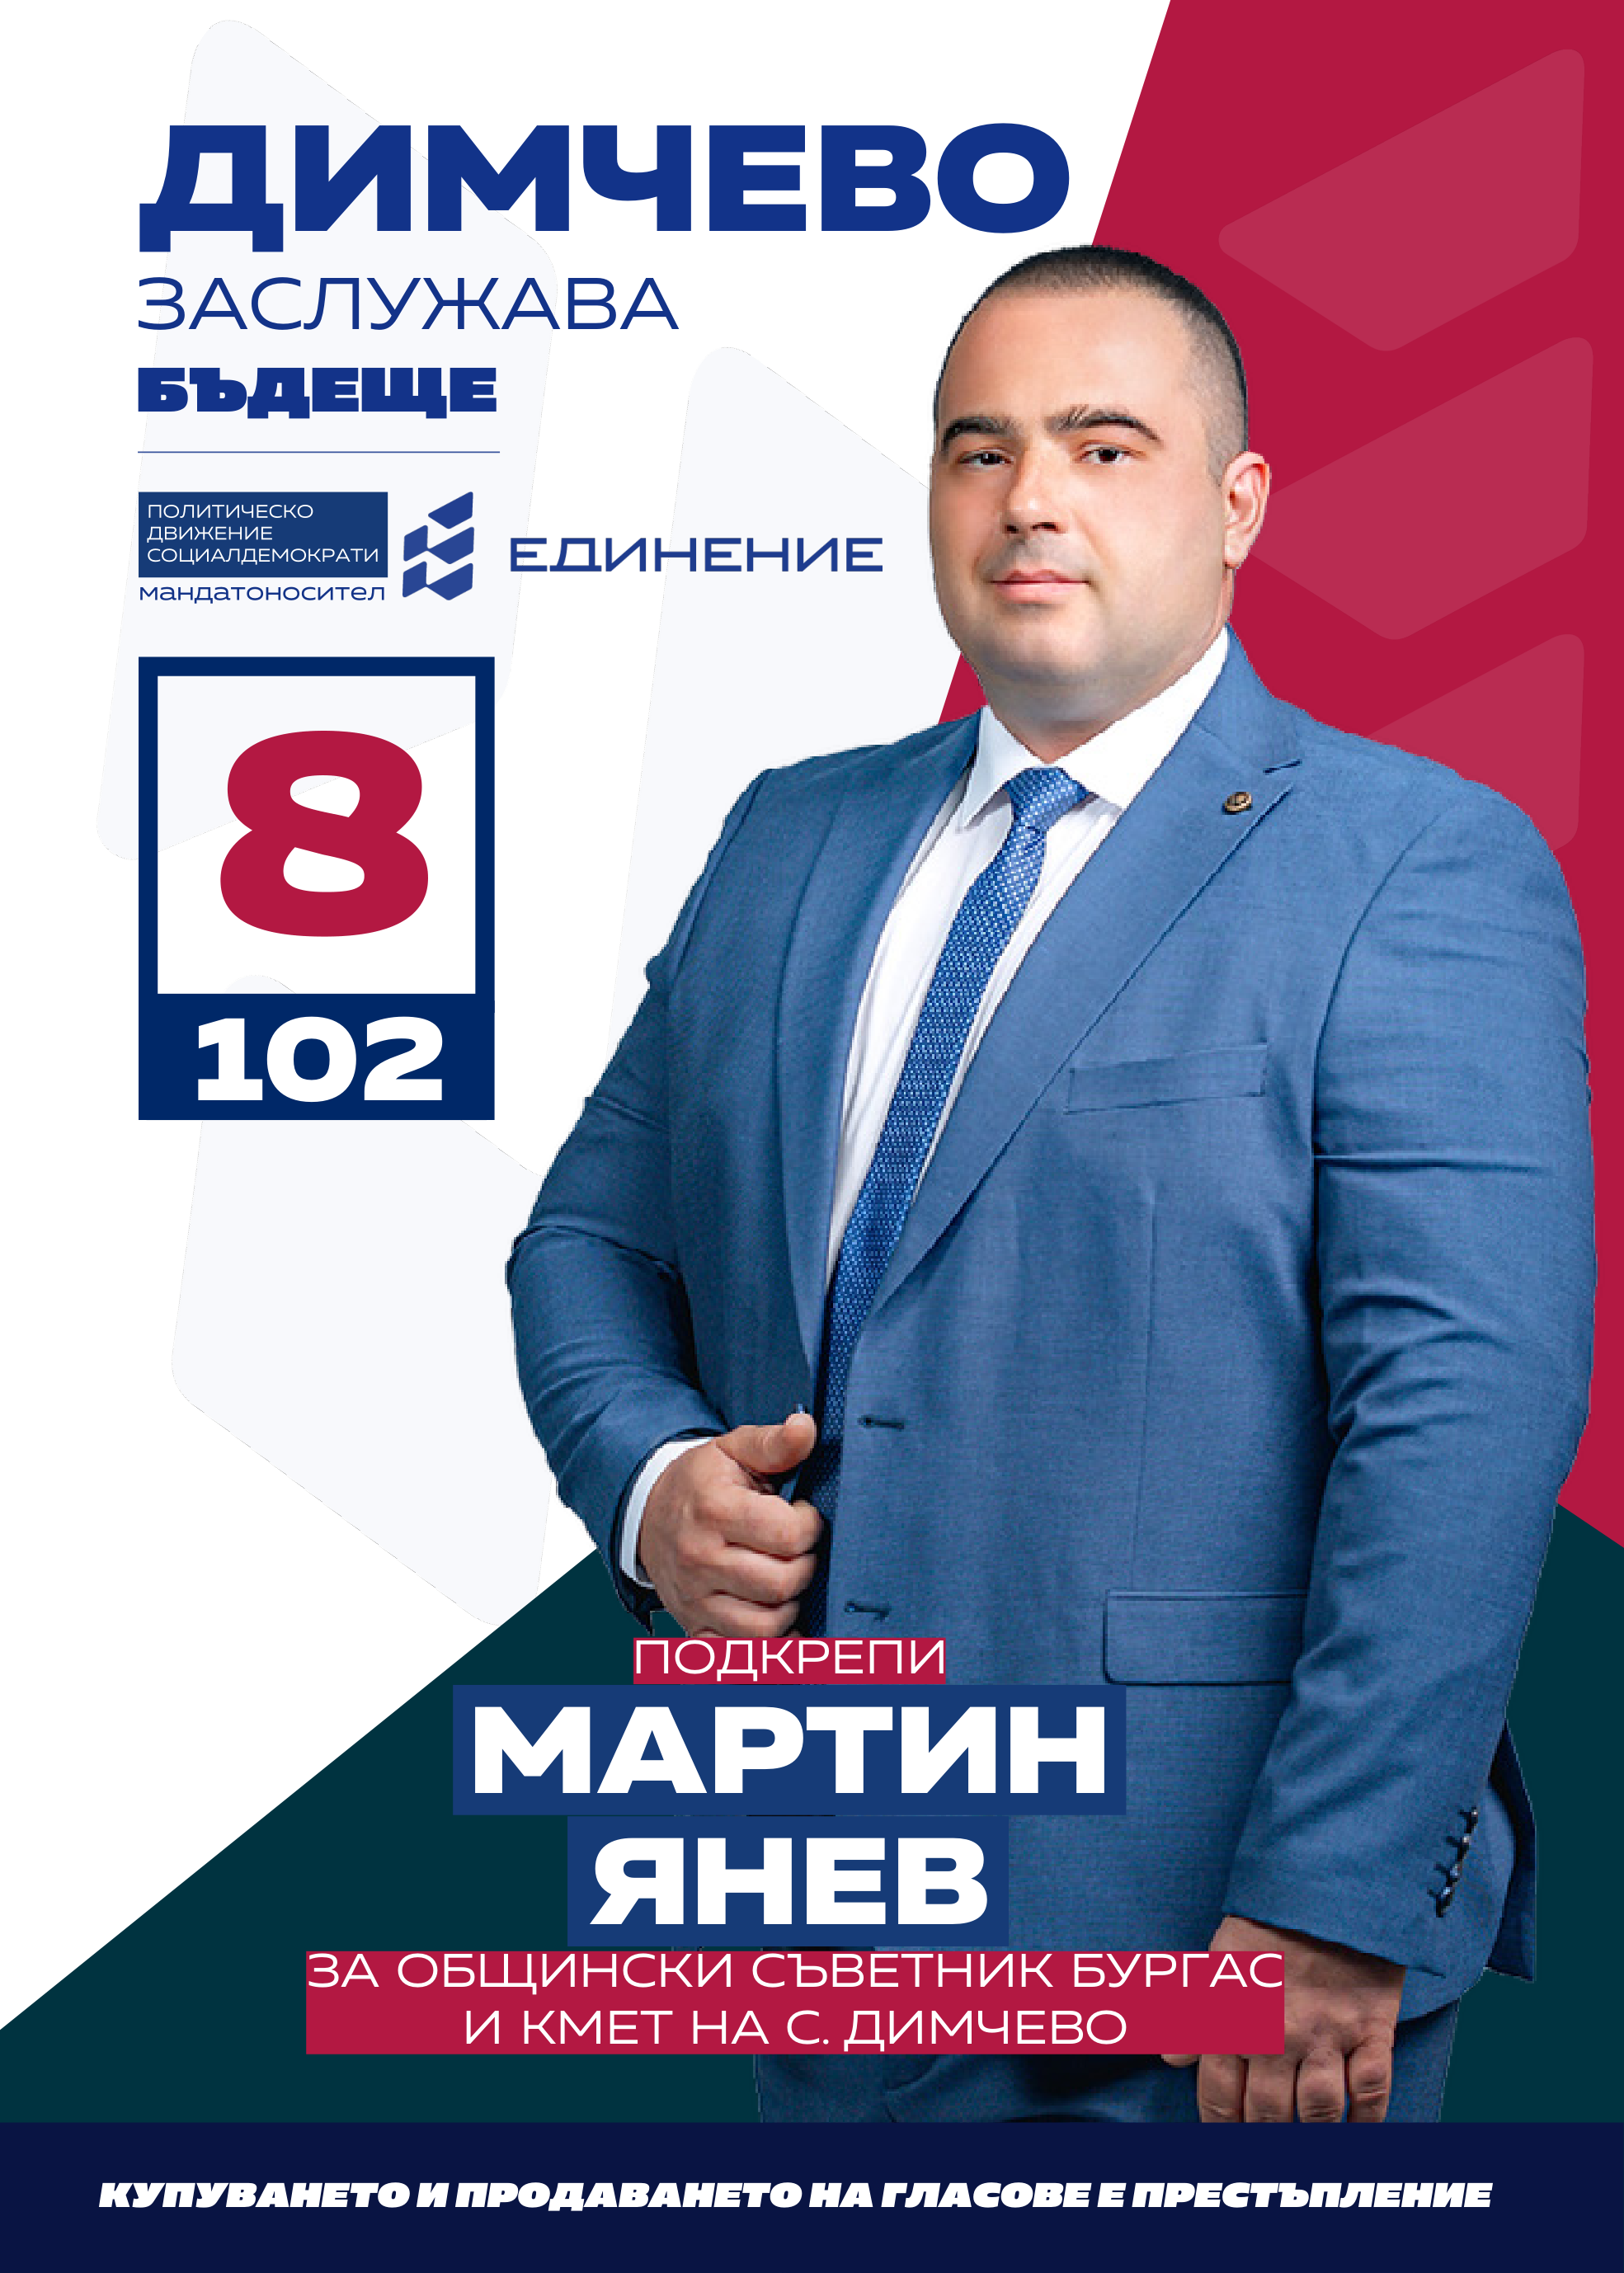 Мартин Янев – управлява собствен бизнес
Мартин Янев е на 41